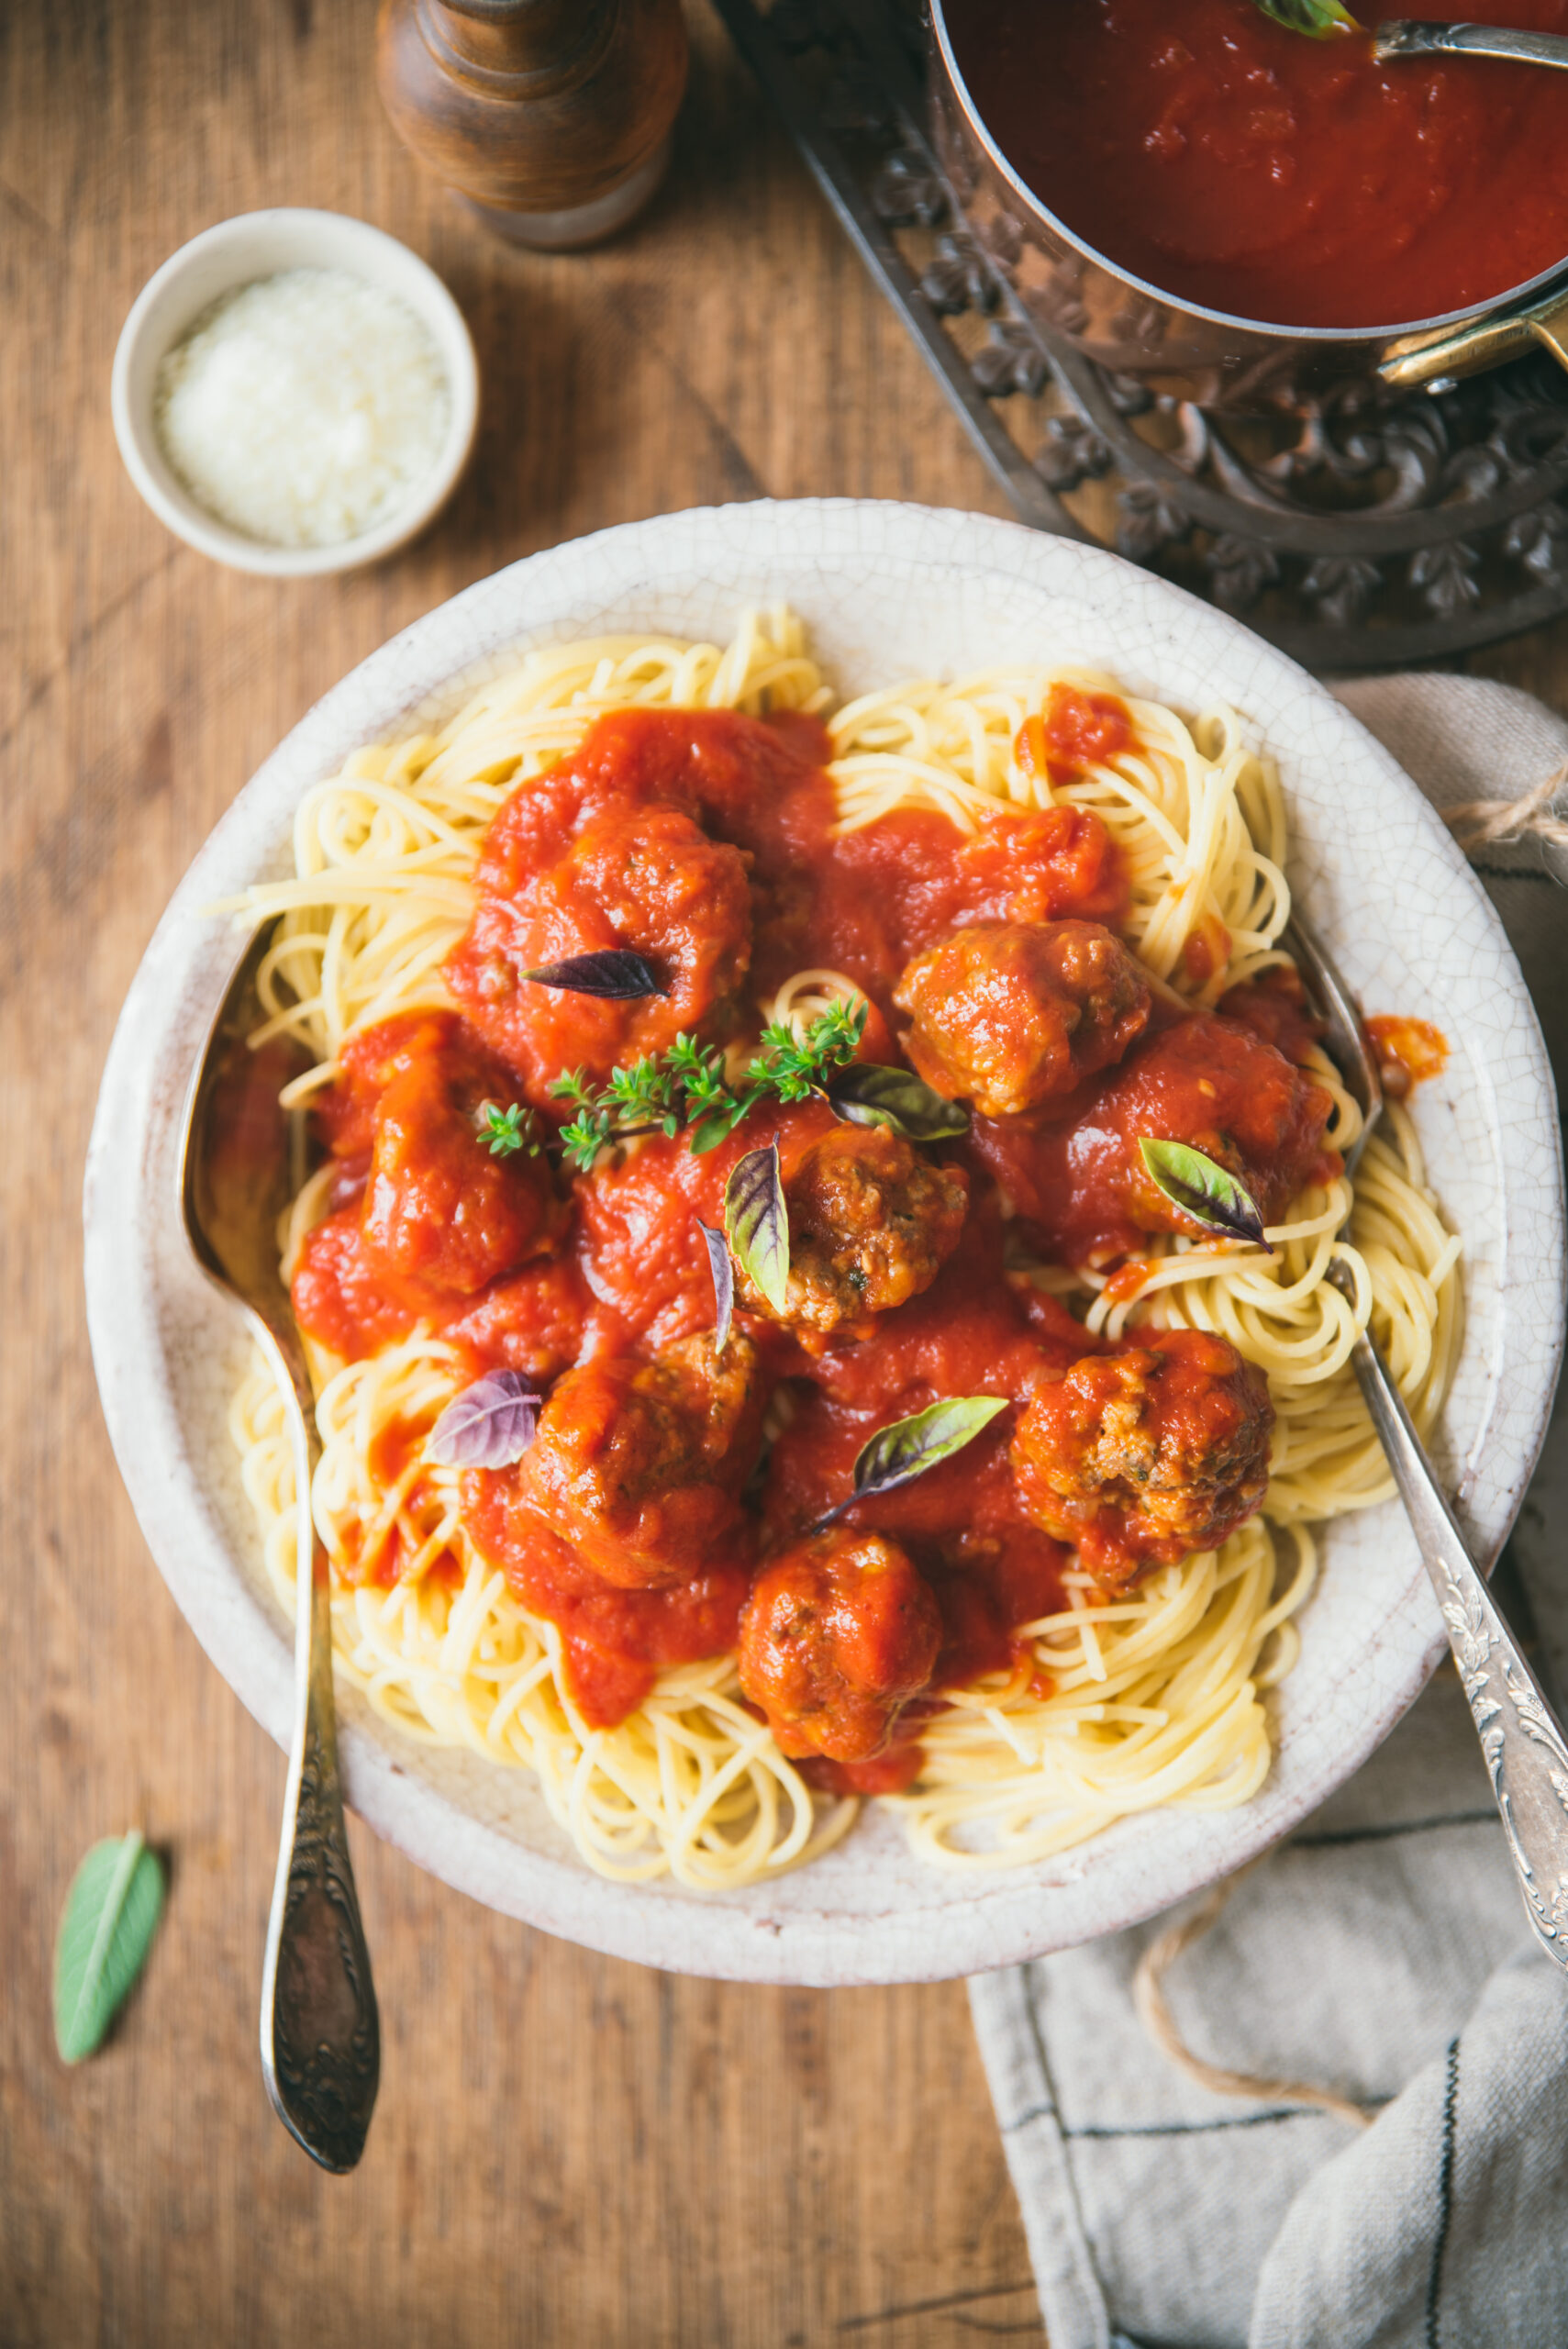 Spaghetti and meatballs in tomato sauce